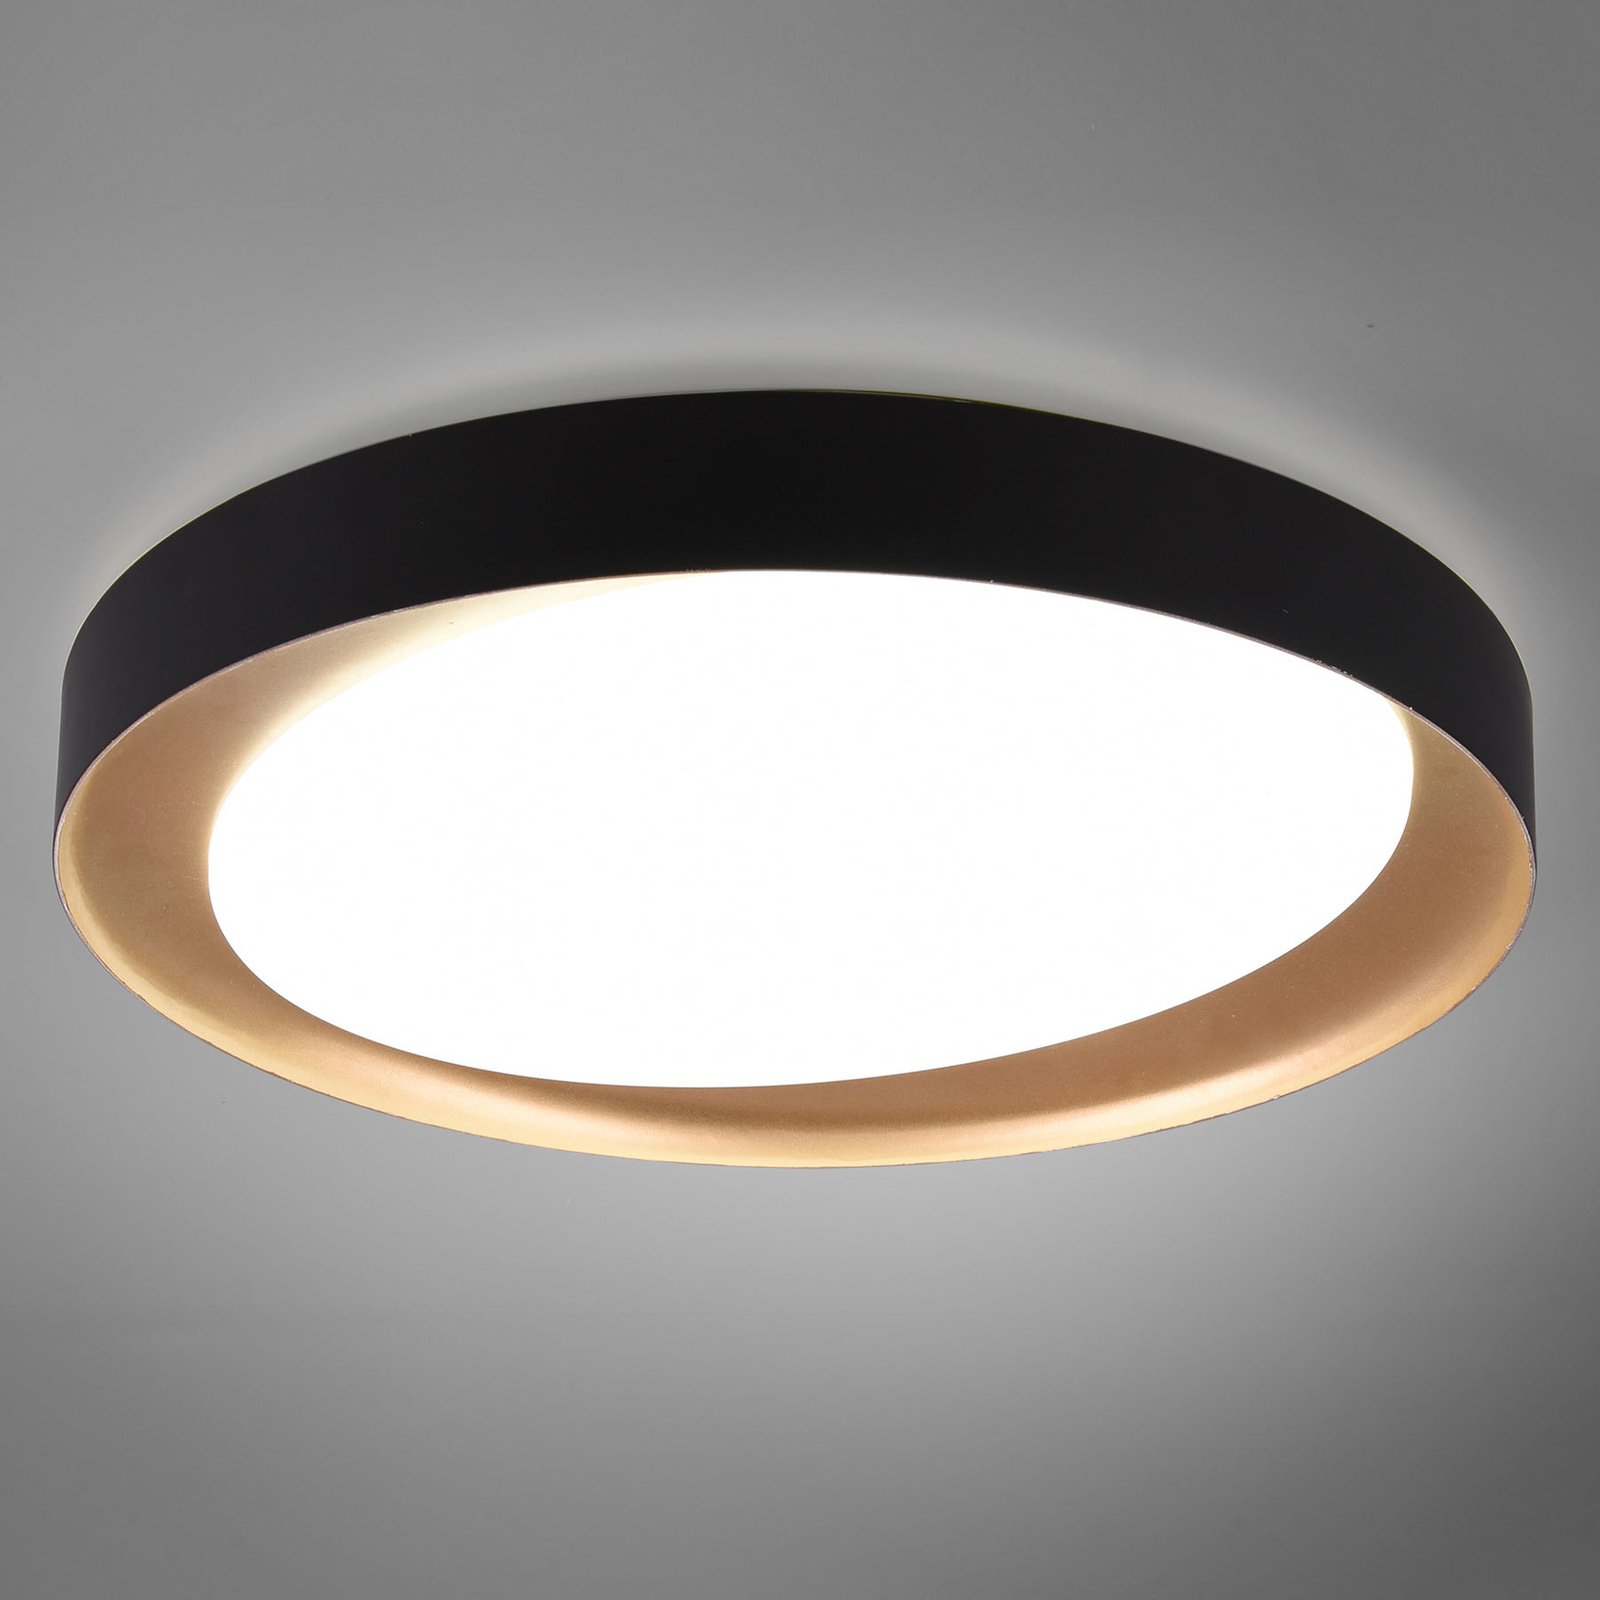 Plafón LED Zeta tunable white, negro/oro